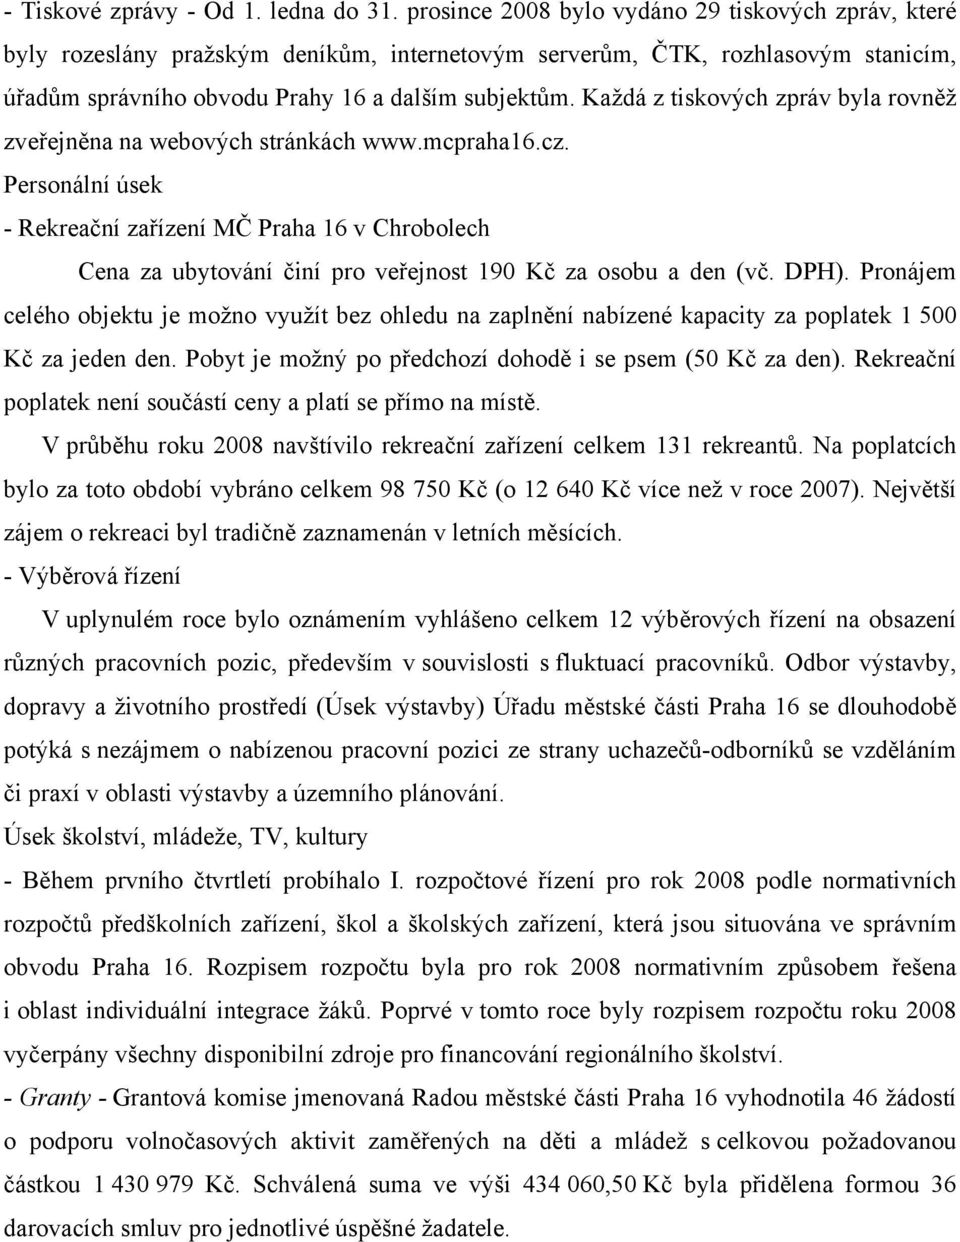 Každá z tiskových zpráv byla rovněž zveřejněna na webových stránkách www.mcpraha16.cz.